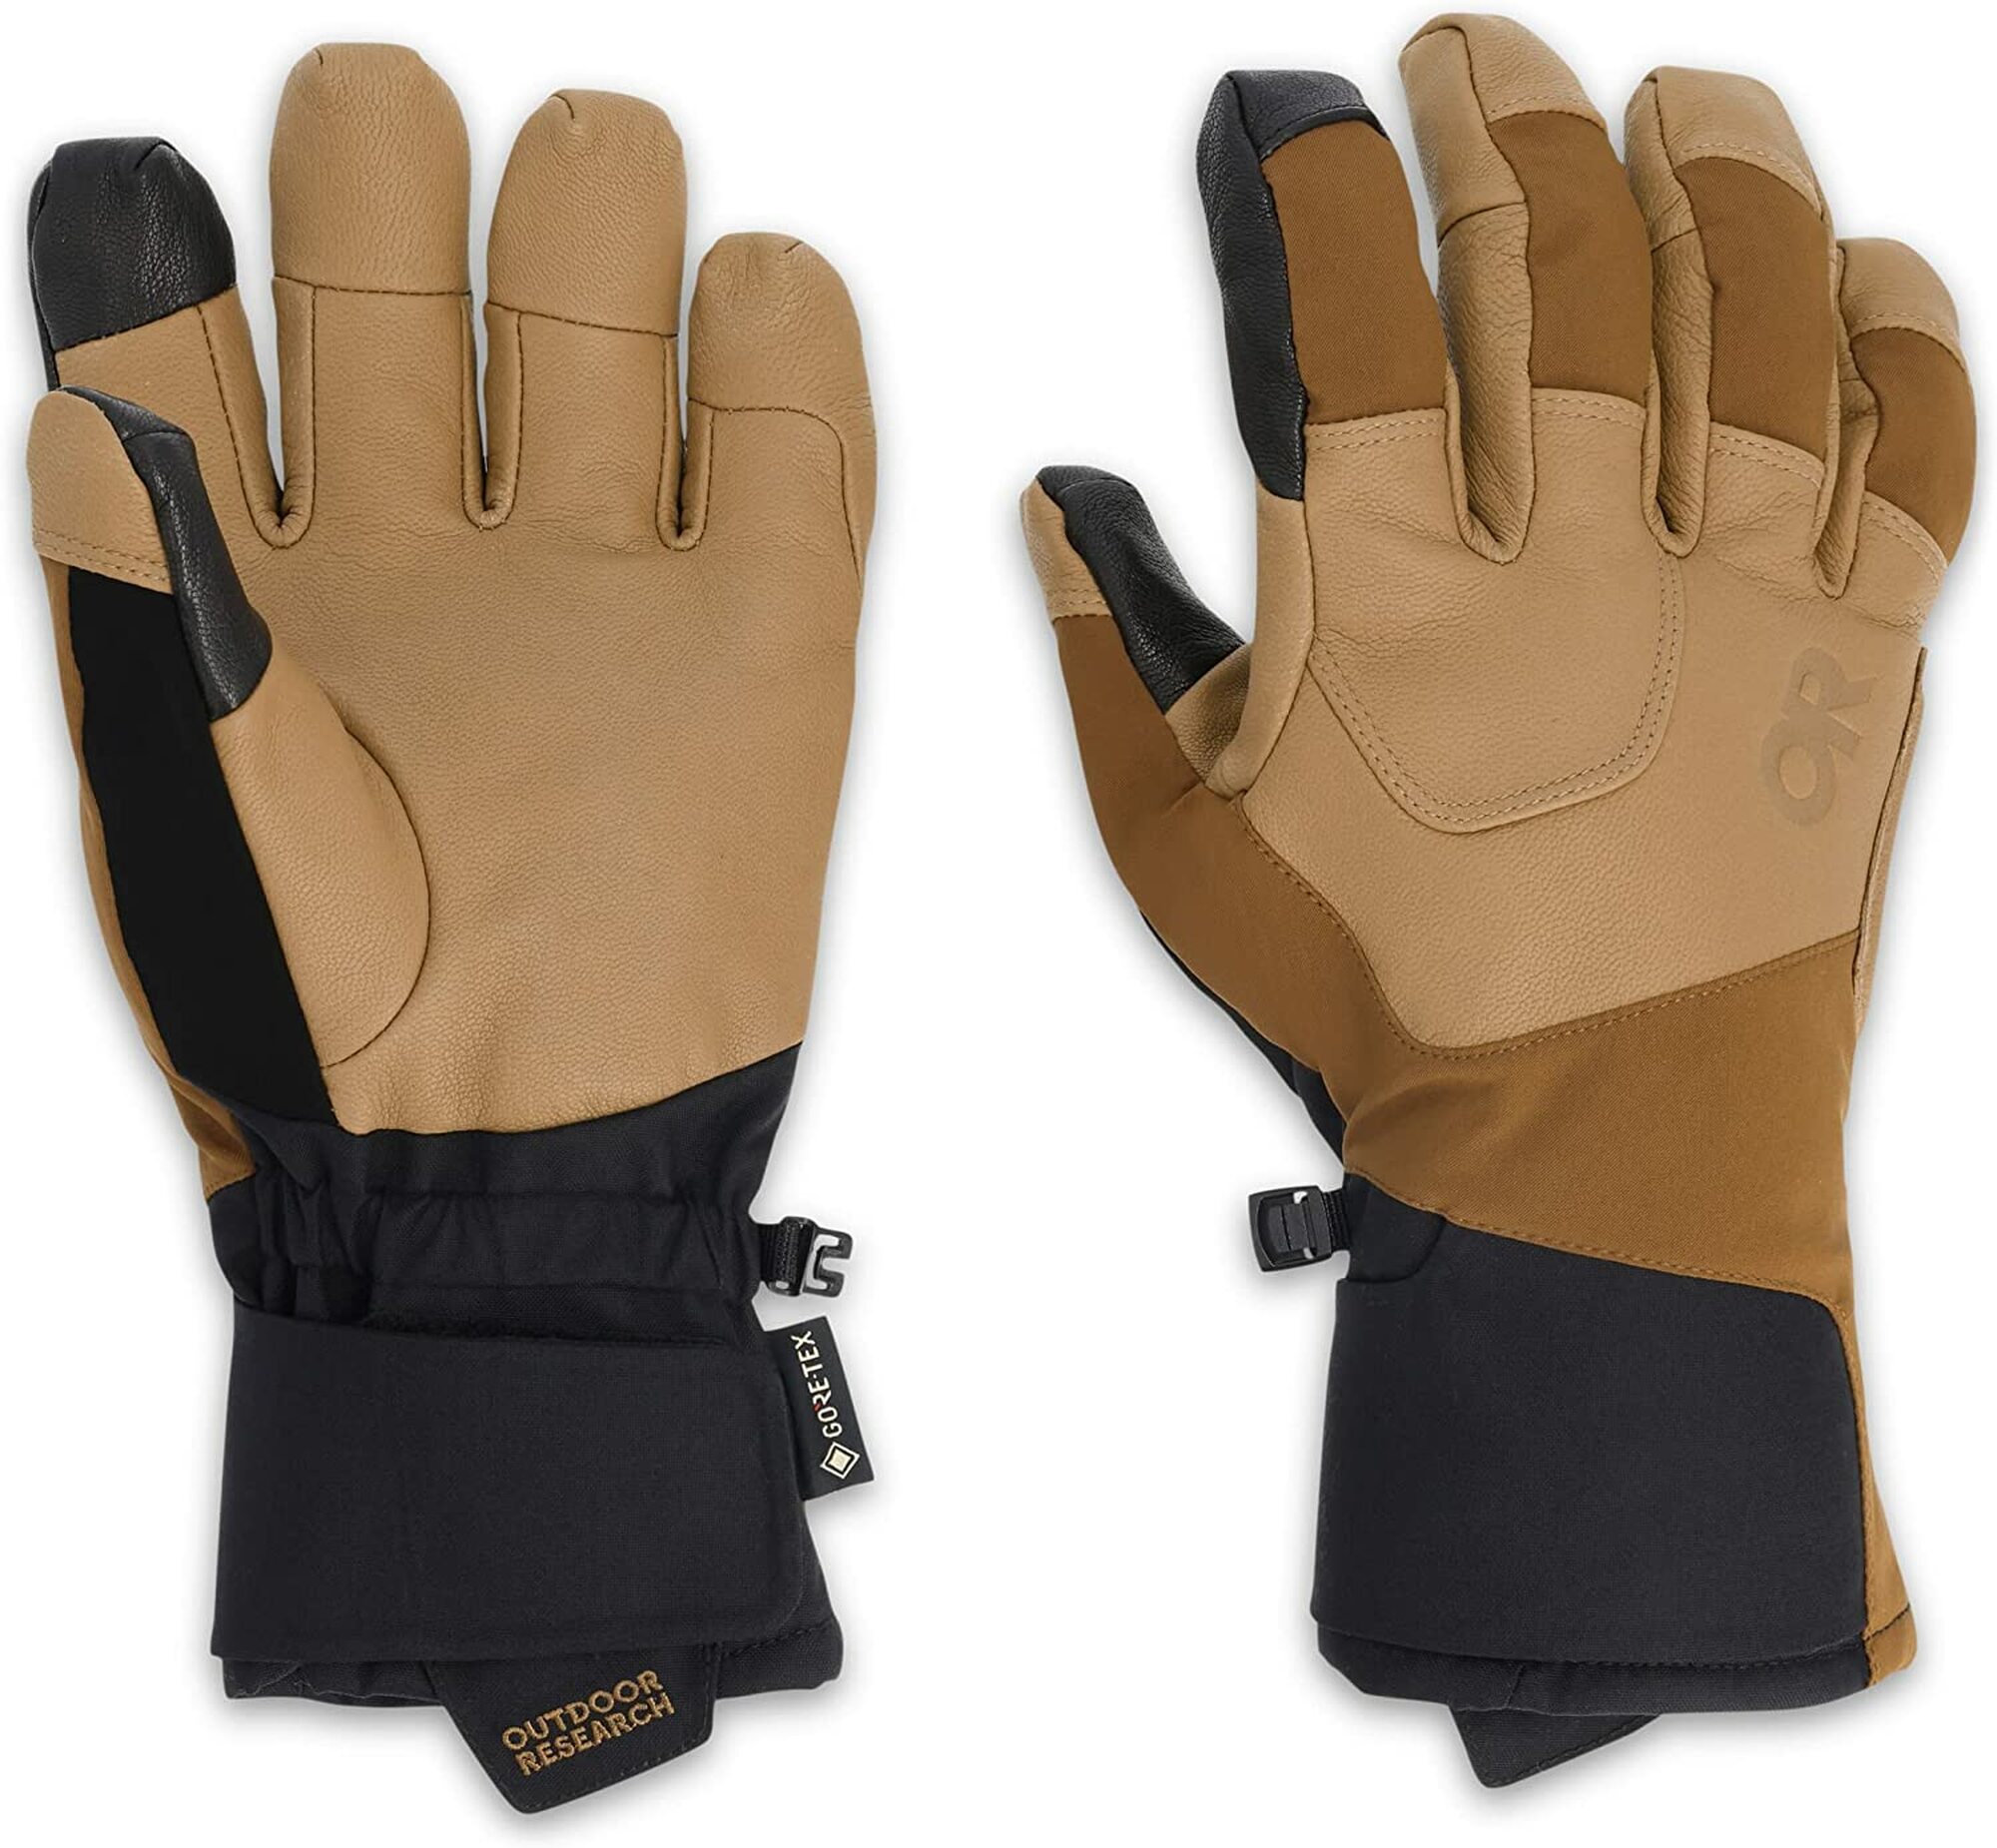 Outdoor Research Alpinite Gore-Tex Glove